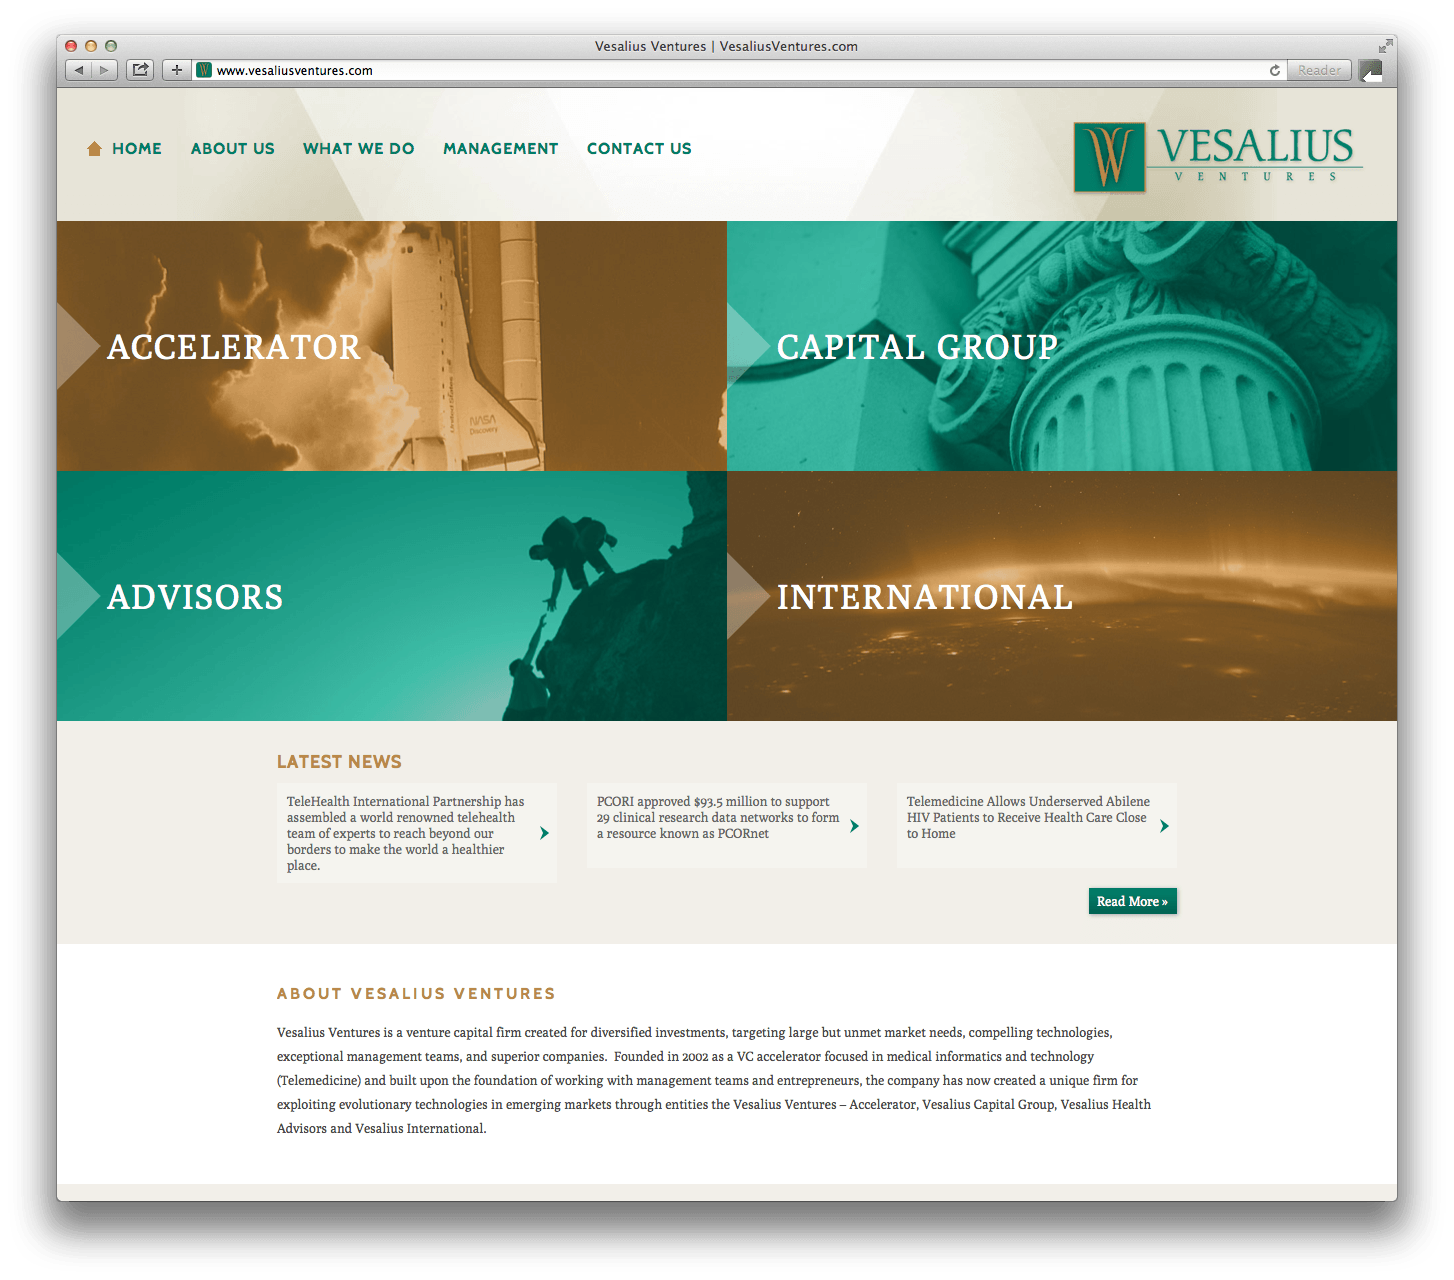 Vesalius Ventures Website Design